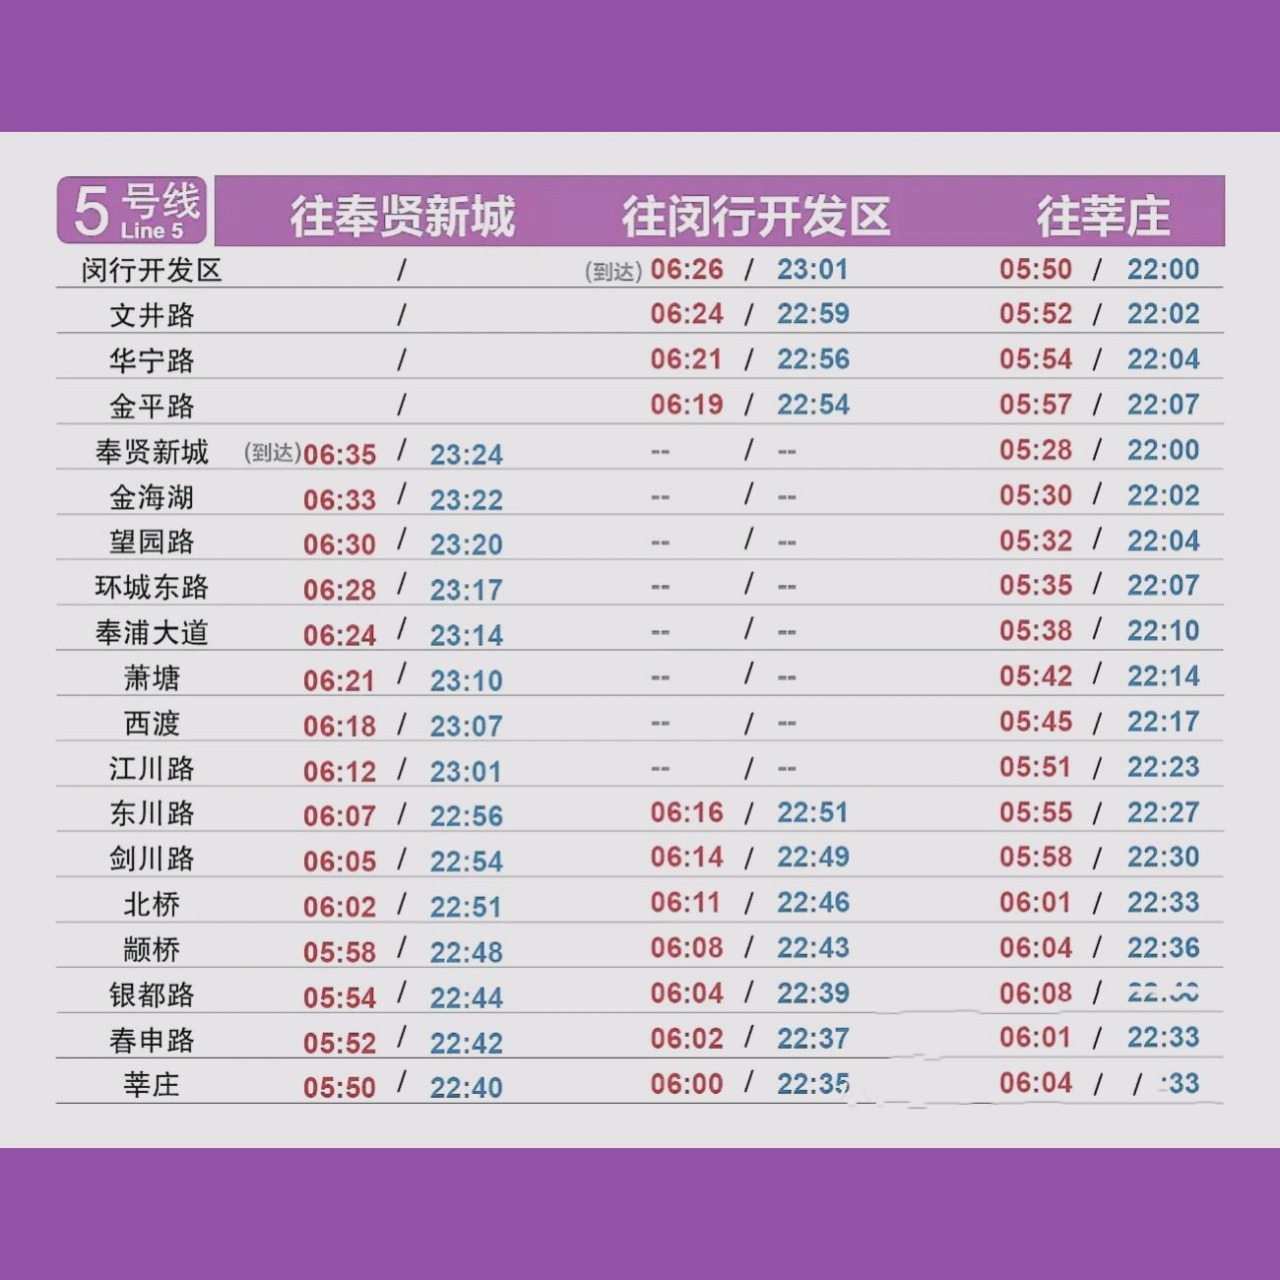 上海地铁5号线首末班车时间表 上海地铁5号线首末班车时间表